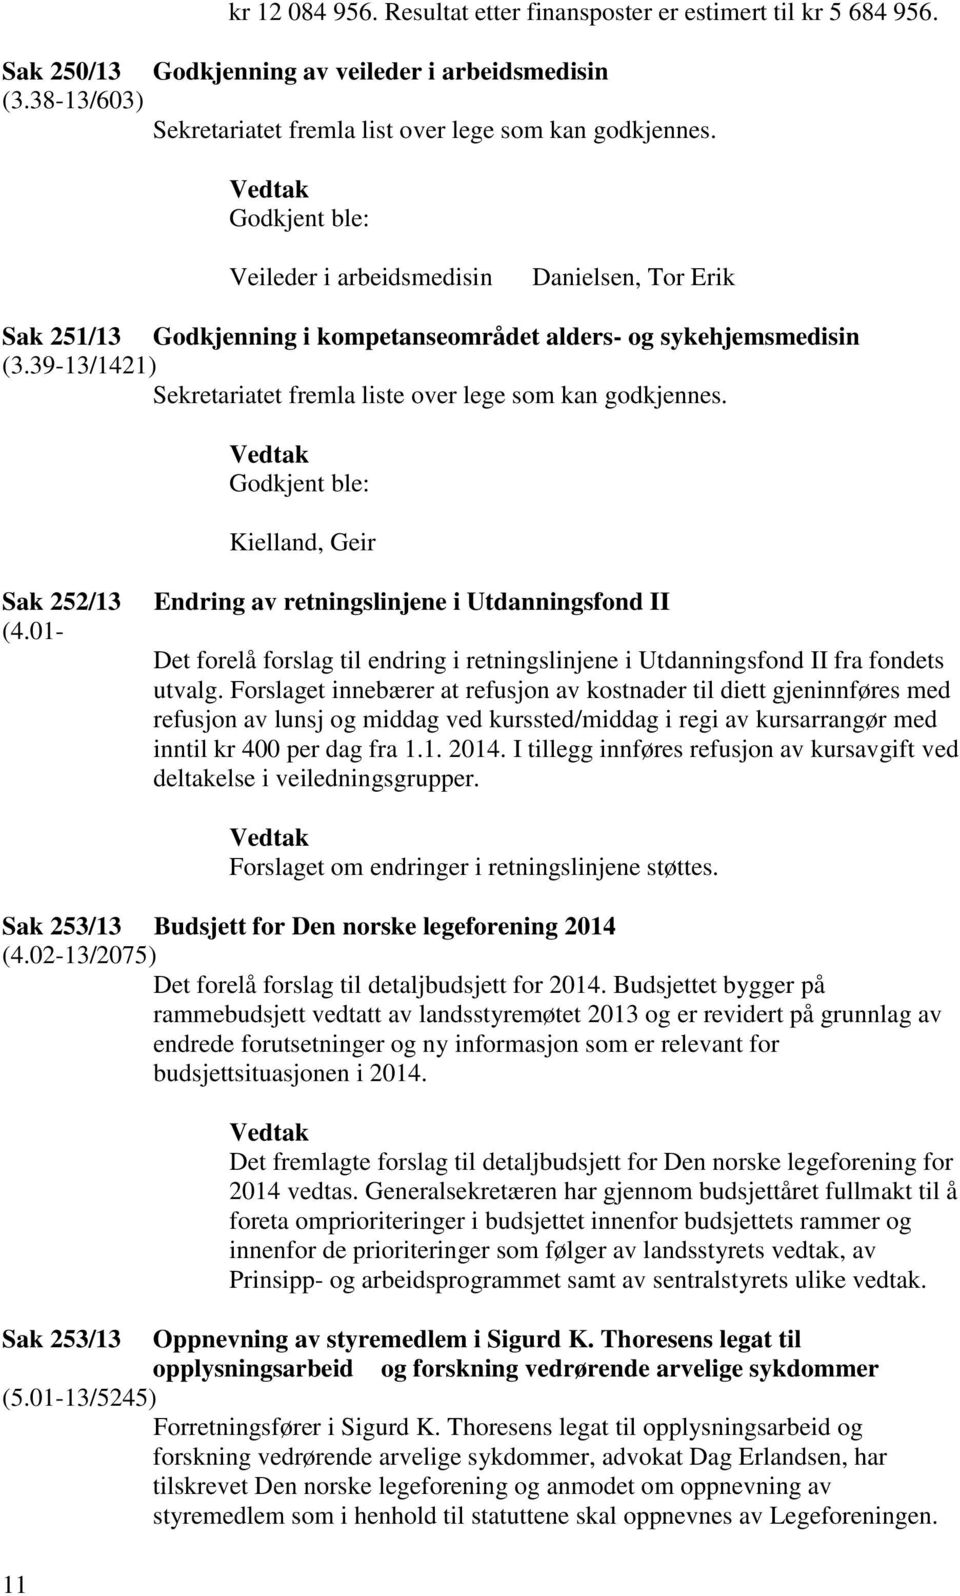 39-13/1421) Sekretariatet fremla liste over lege som kan godkjennes. Godkjent ble: Kielland, Geir Sak 252/13 (4.